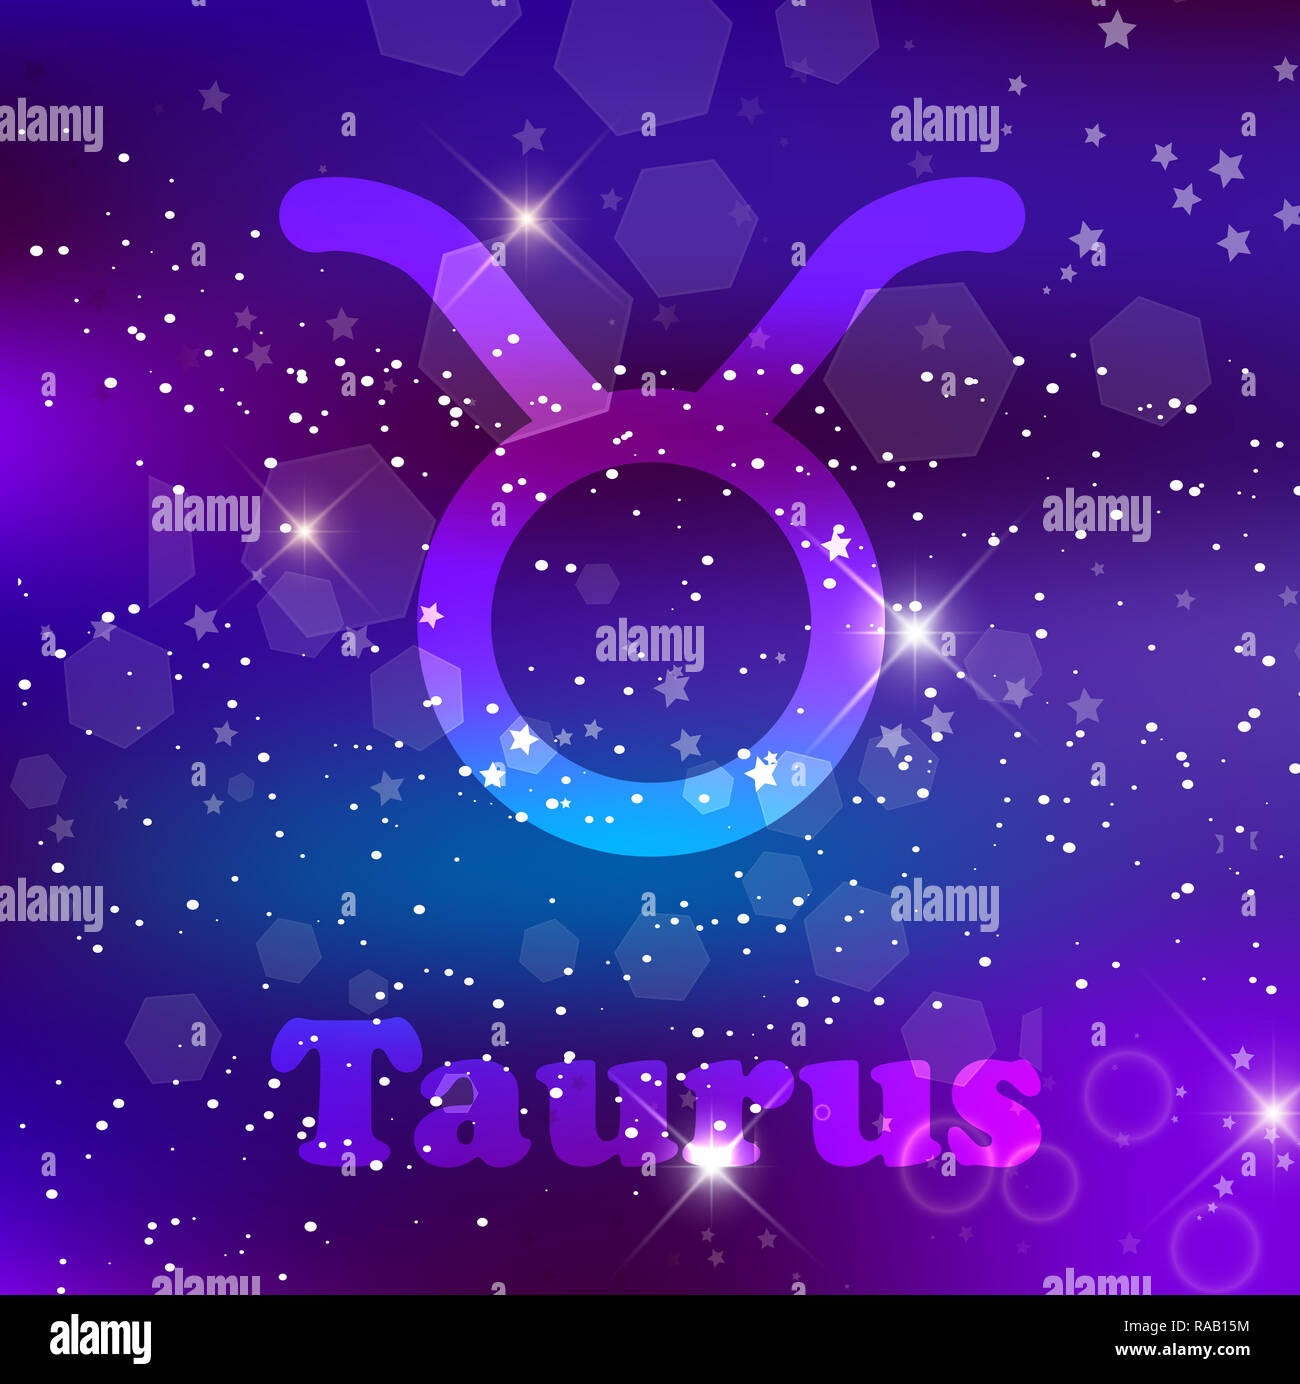 Toro segno zodiacale e costellazione sul cosmica sfondo viola con stelle luccicanti e nebulosa. illustrazione, banner, poster, bull card. Spazio, come Foto Stock